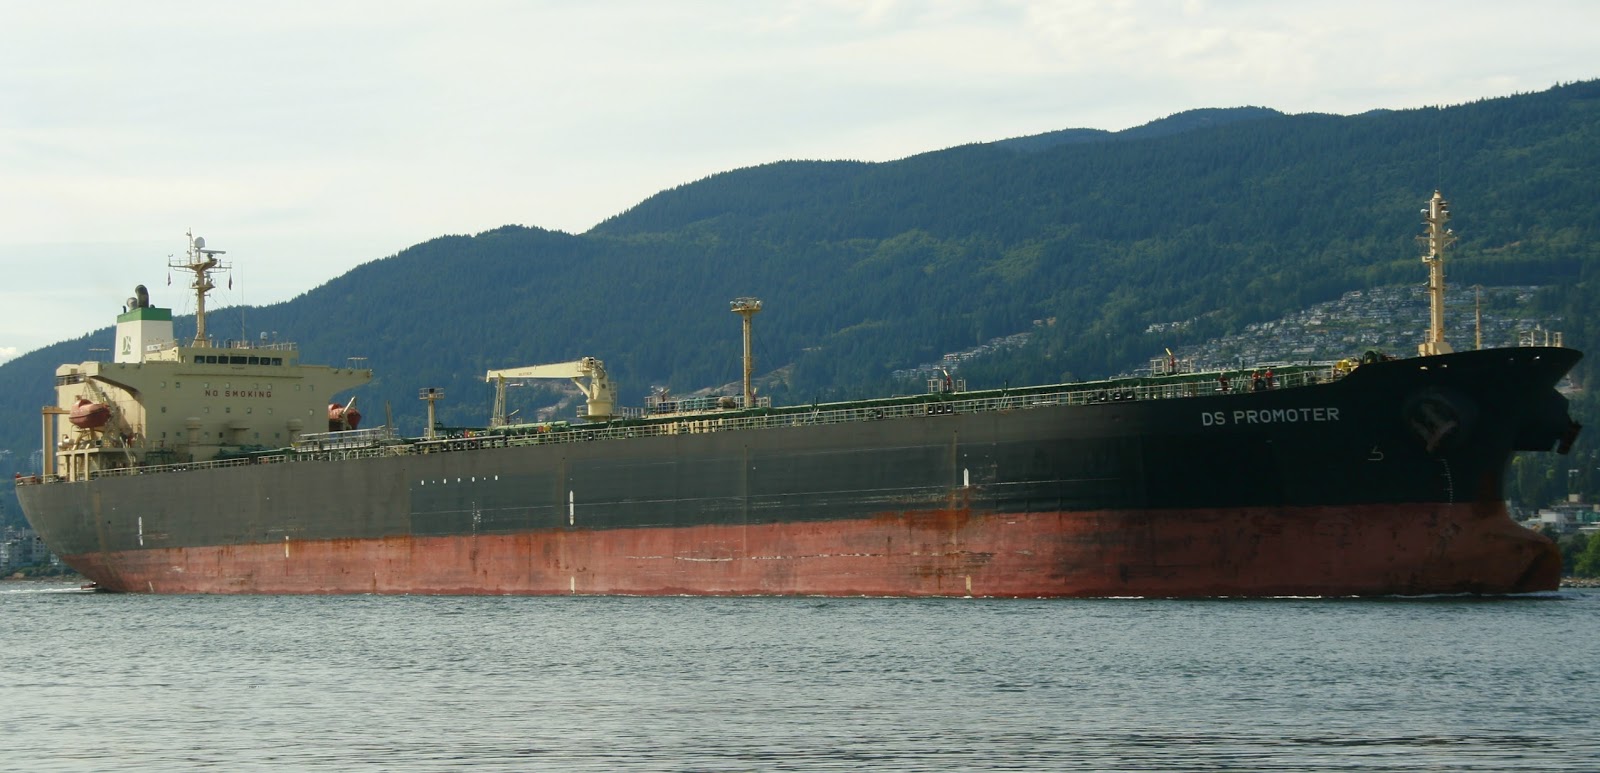 Capitán de buque cargado de fuel oil se niega a llevarlo a Venezuela por temor a sanciones